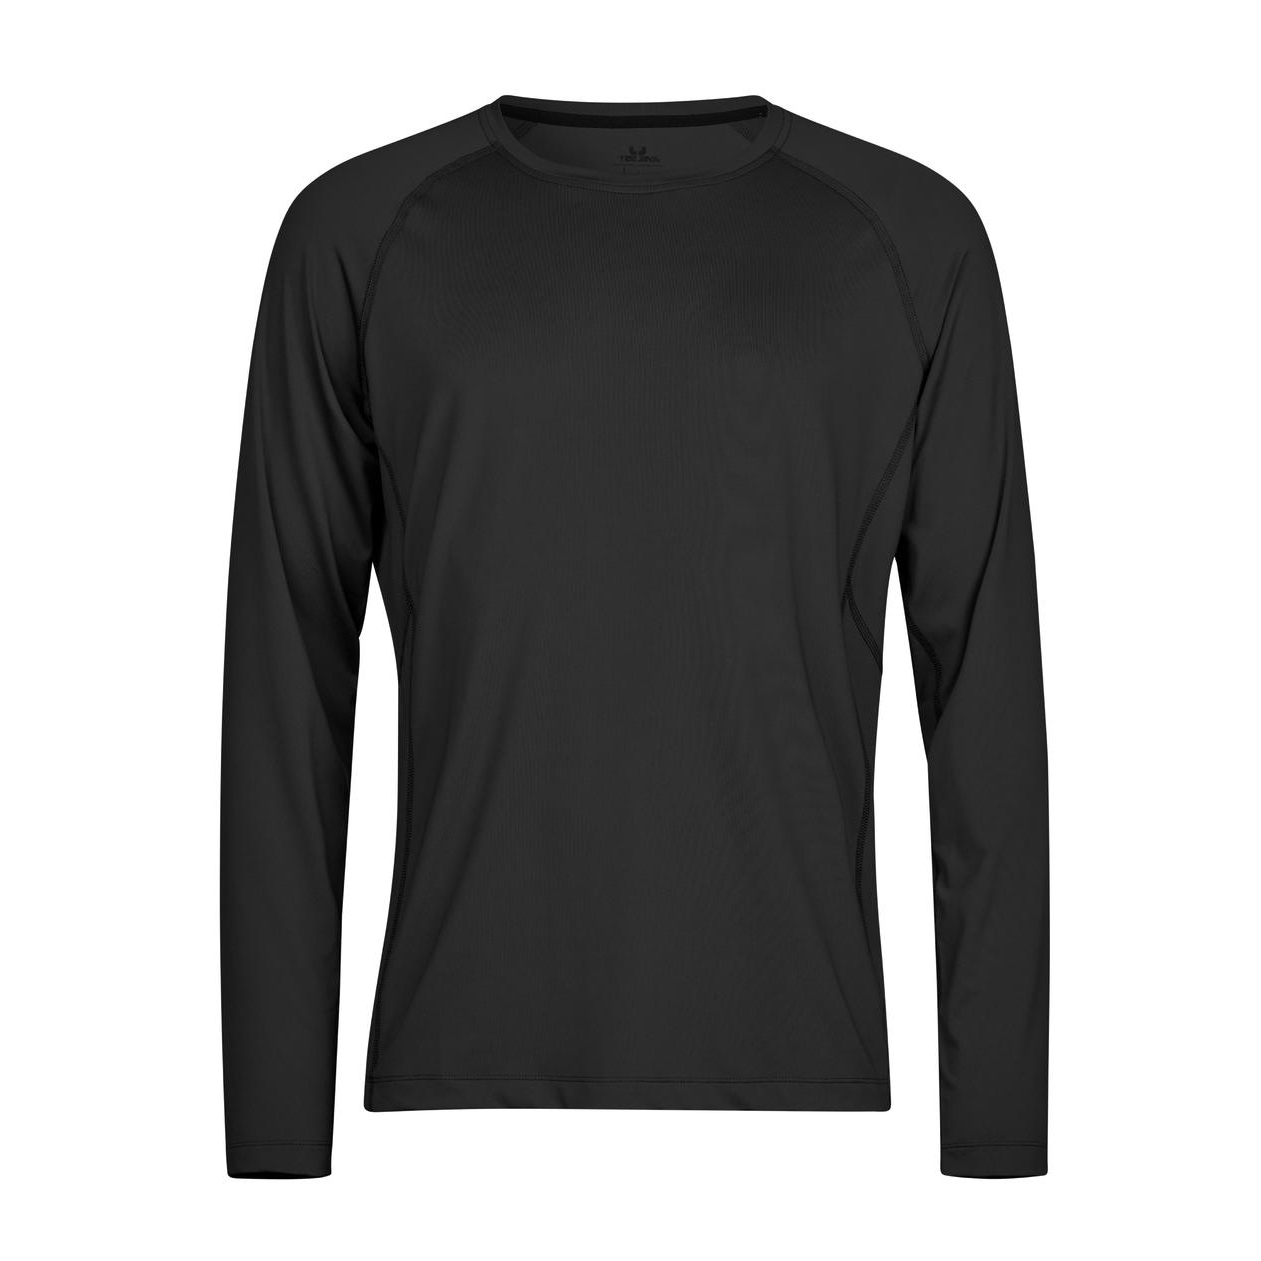 Triko pánské Stedman Tee Jays CoolDry tričko s dlouhými rukávy - černé, XXL